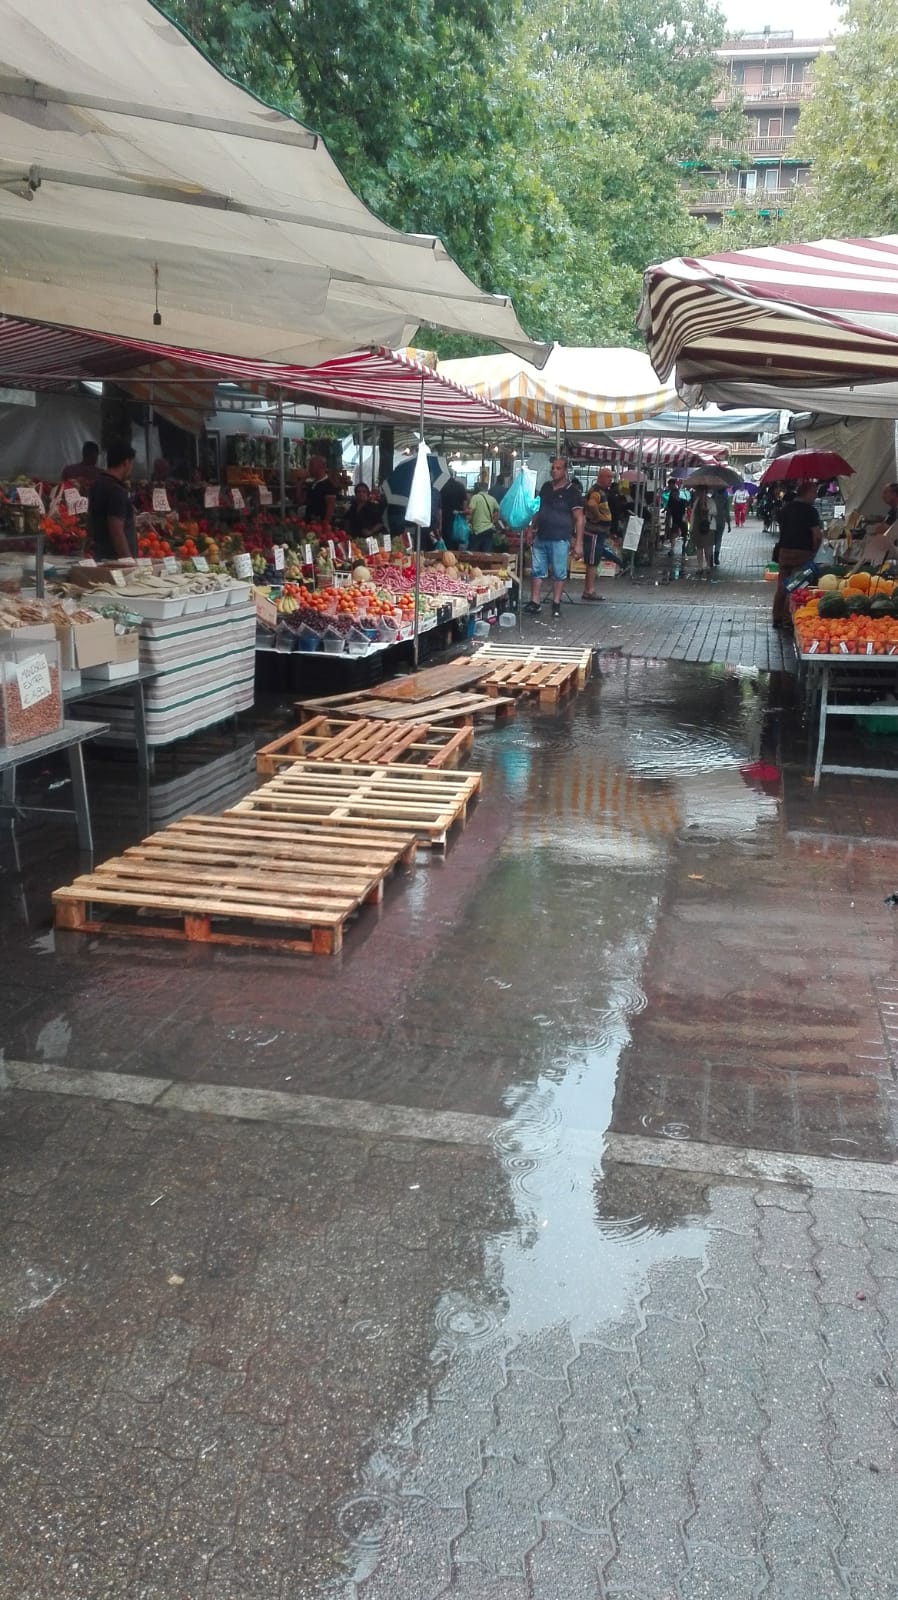 Acqua alta in piazza a pioltello ambulanti del mercato